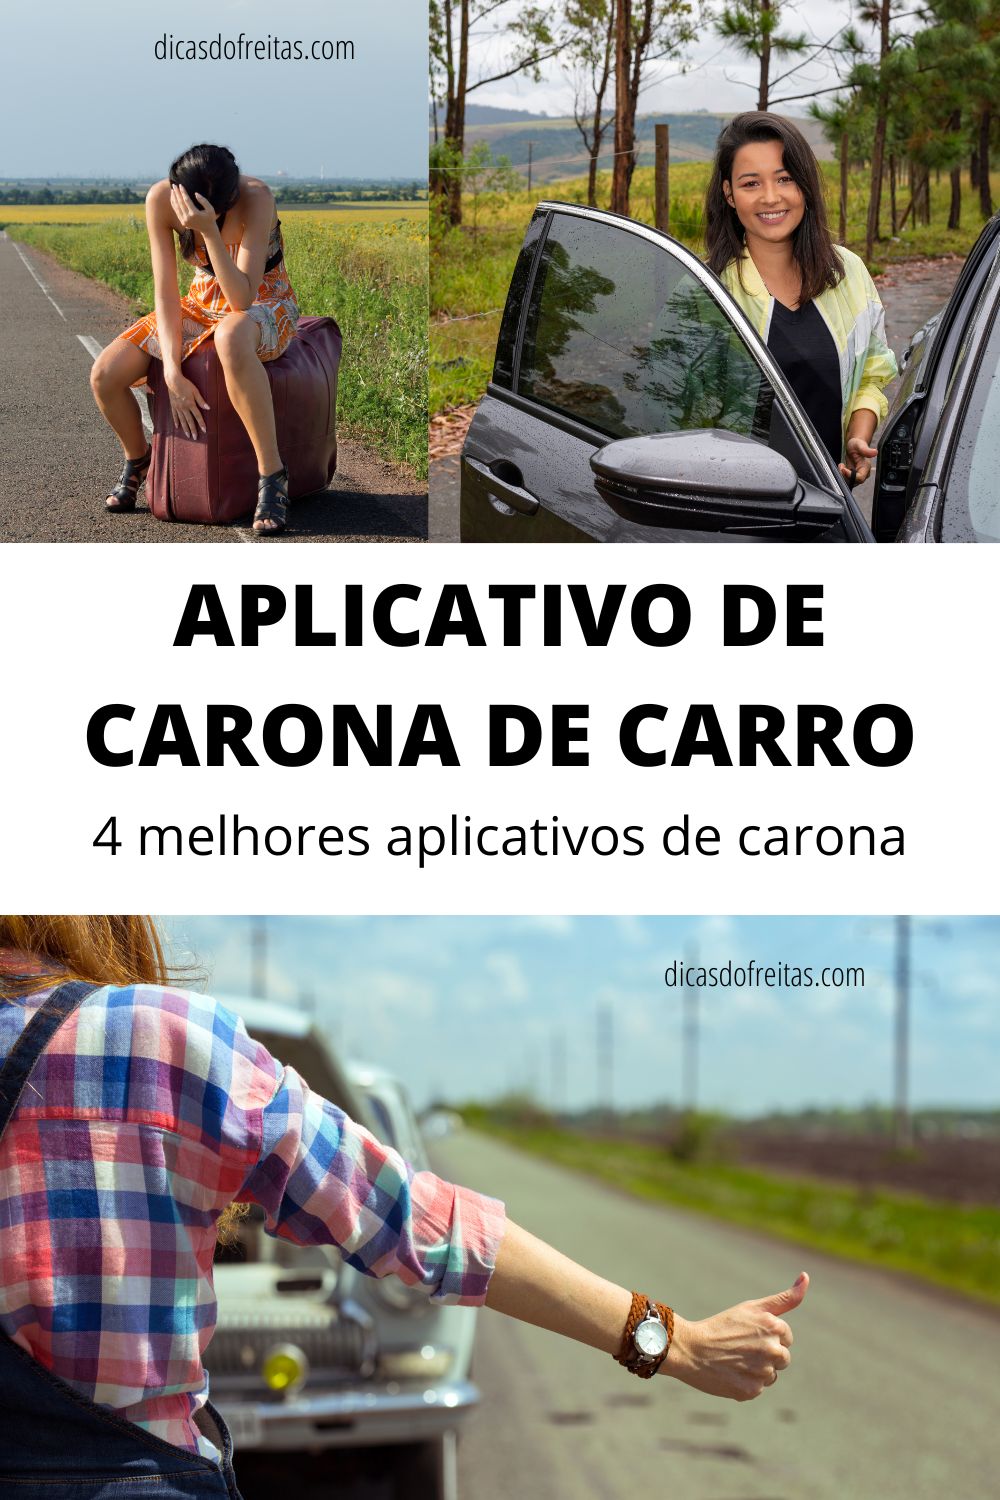 Aplicativo de carona de carro: 4 melhores aplicativos de carona